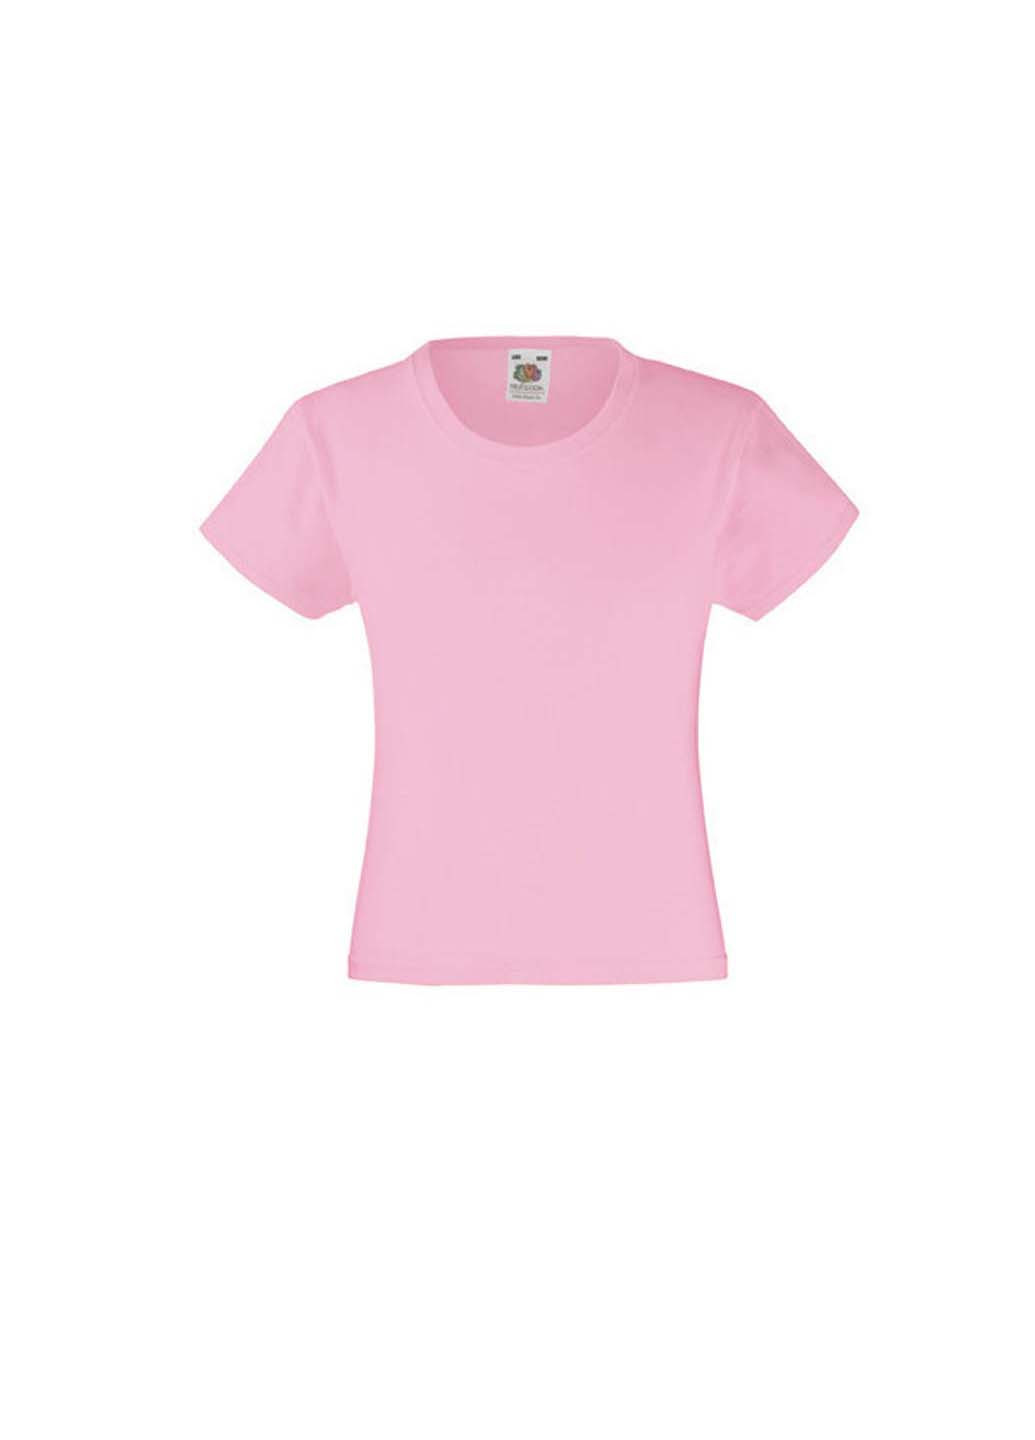 Светло-розовая демисезонная футболка Fruit of the Loom